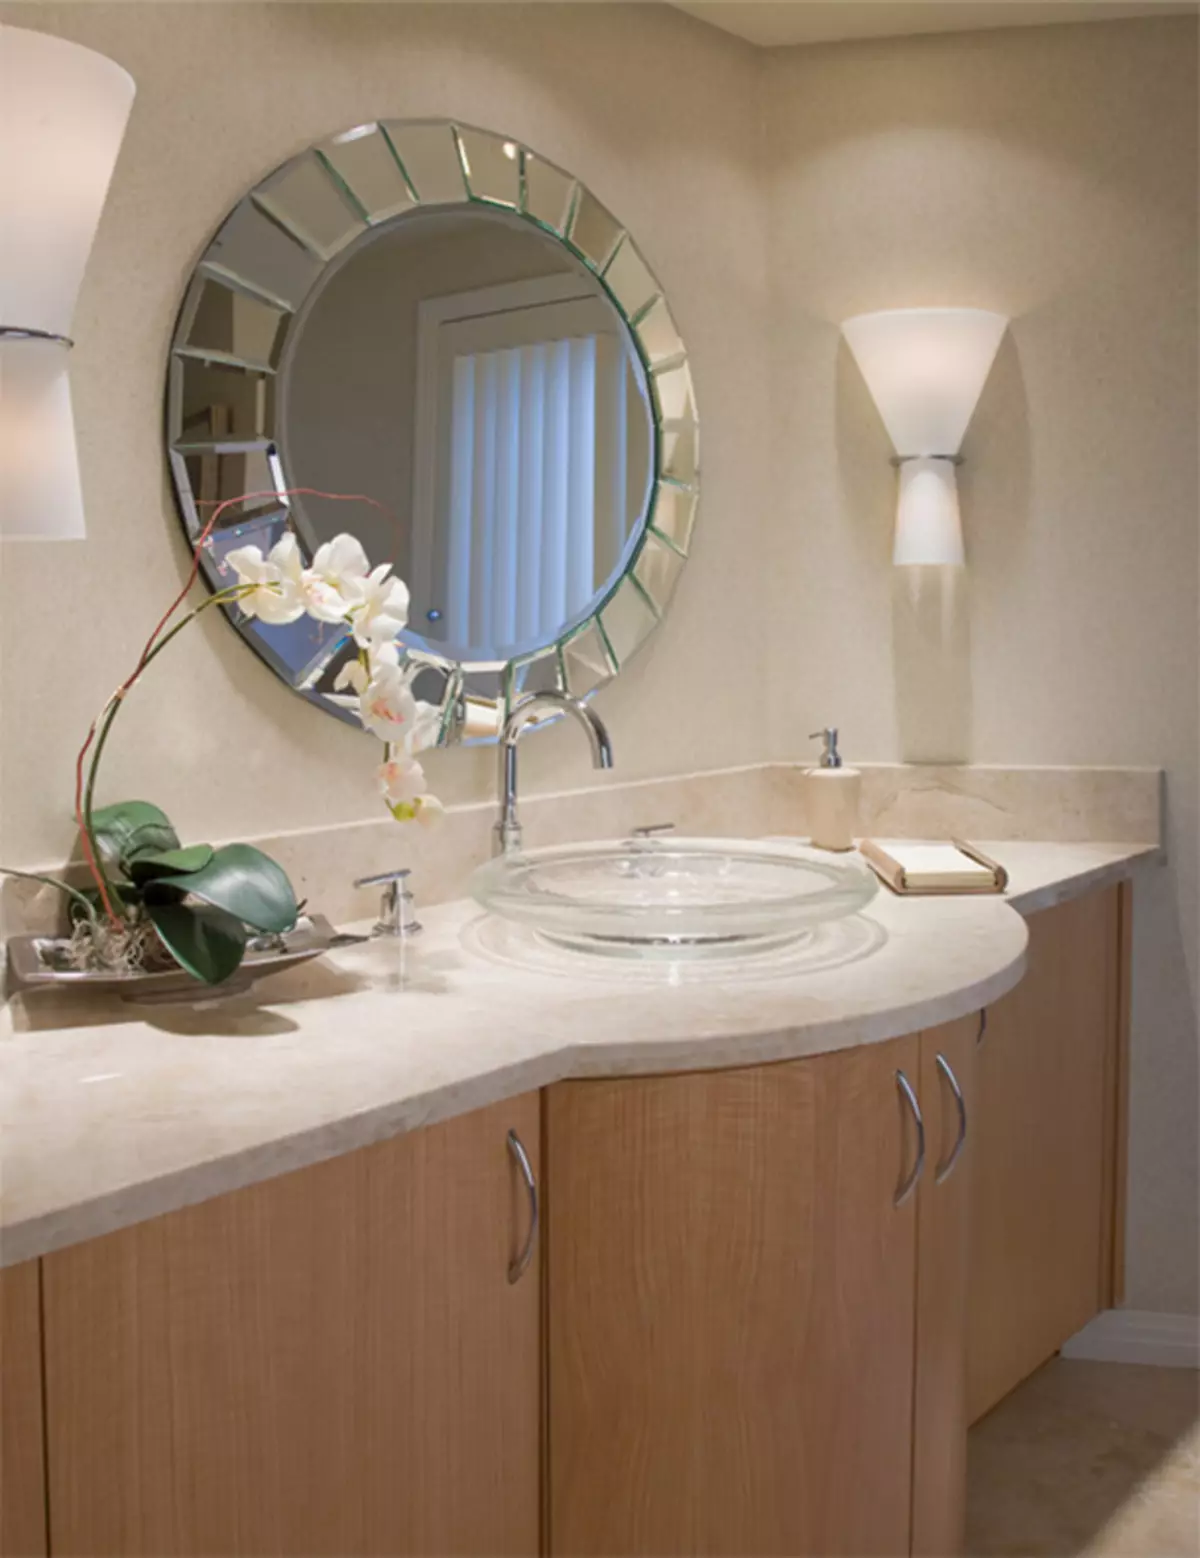 Miroir rond dans la salle de bain: miroirs design dans un cadre en bois, miroirs ronds de couleur noire et autre pour la salle de bain 10427_47